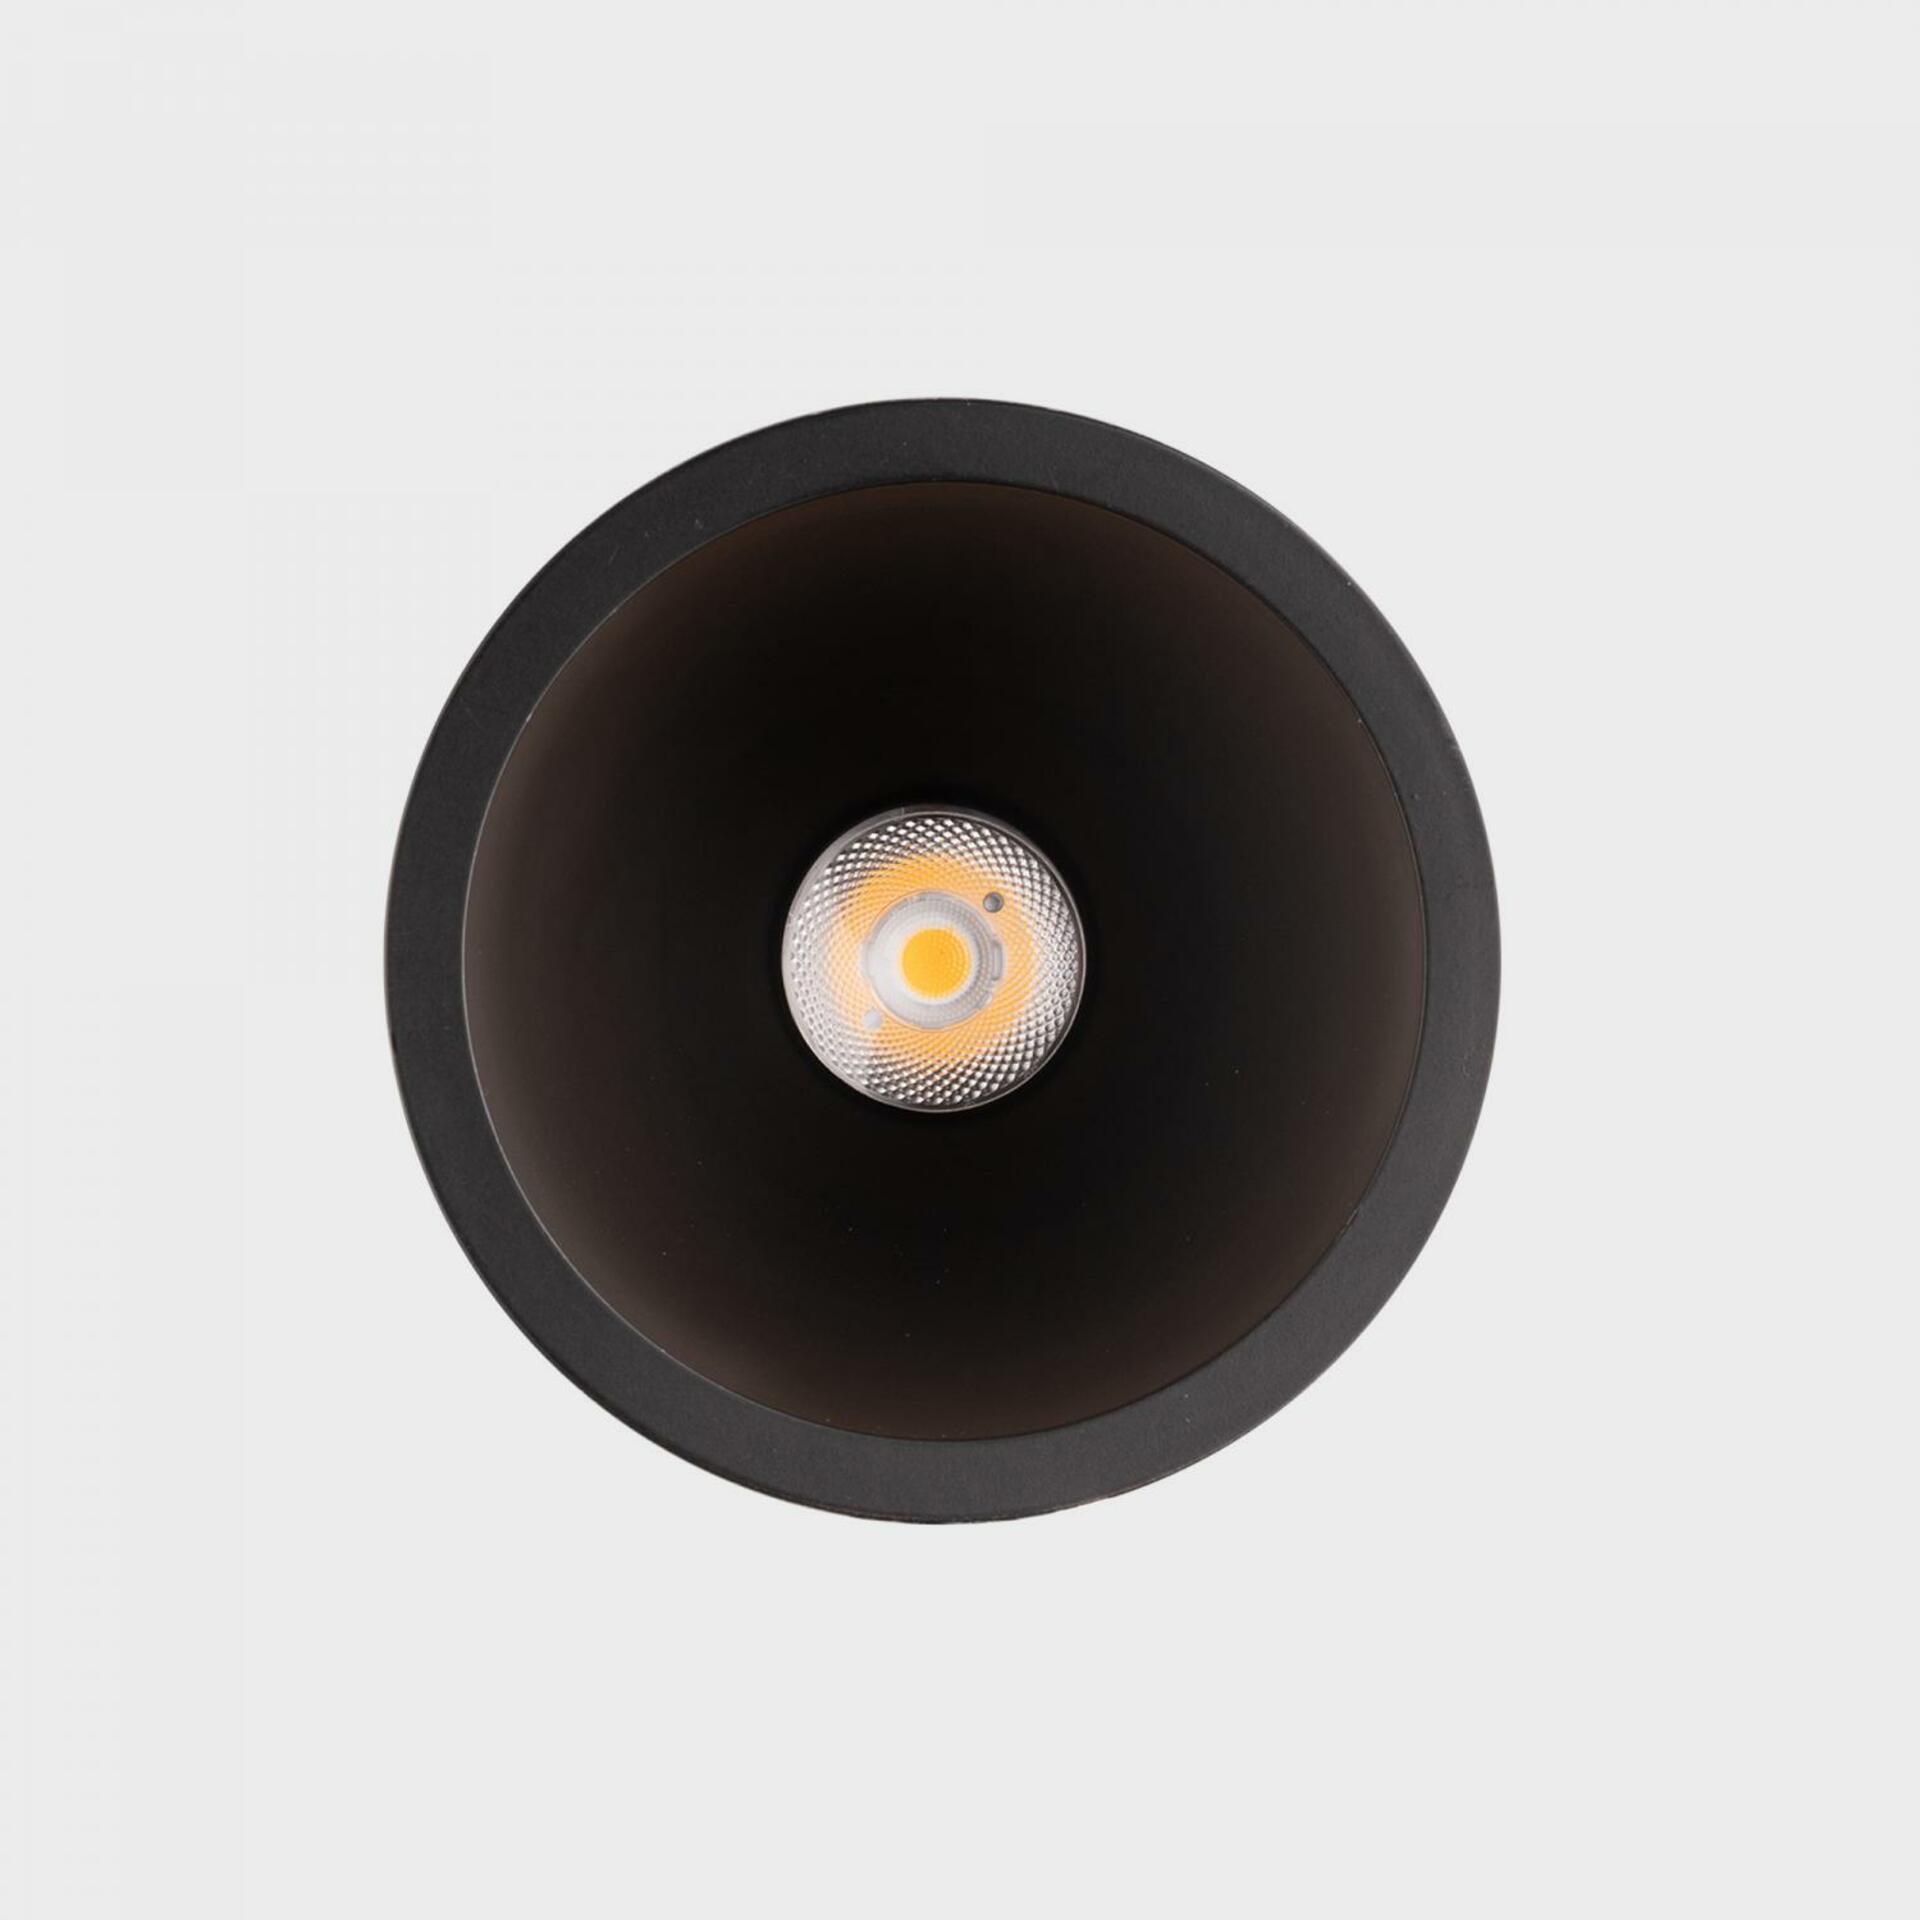 KOHL LIGHTING KOHL-Lighting NOON zapuštěné svítidlo s rámečkem pr.93 mm černá 38° 10 W  CRI 80 2700K DALI